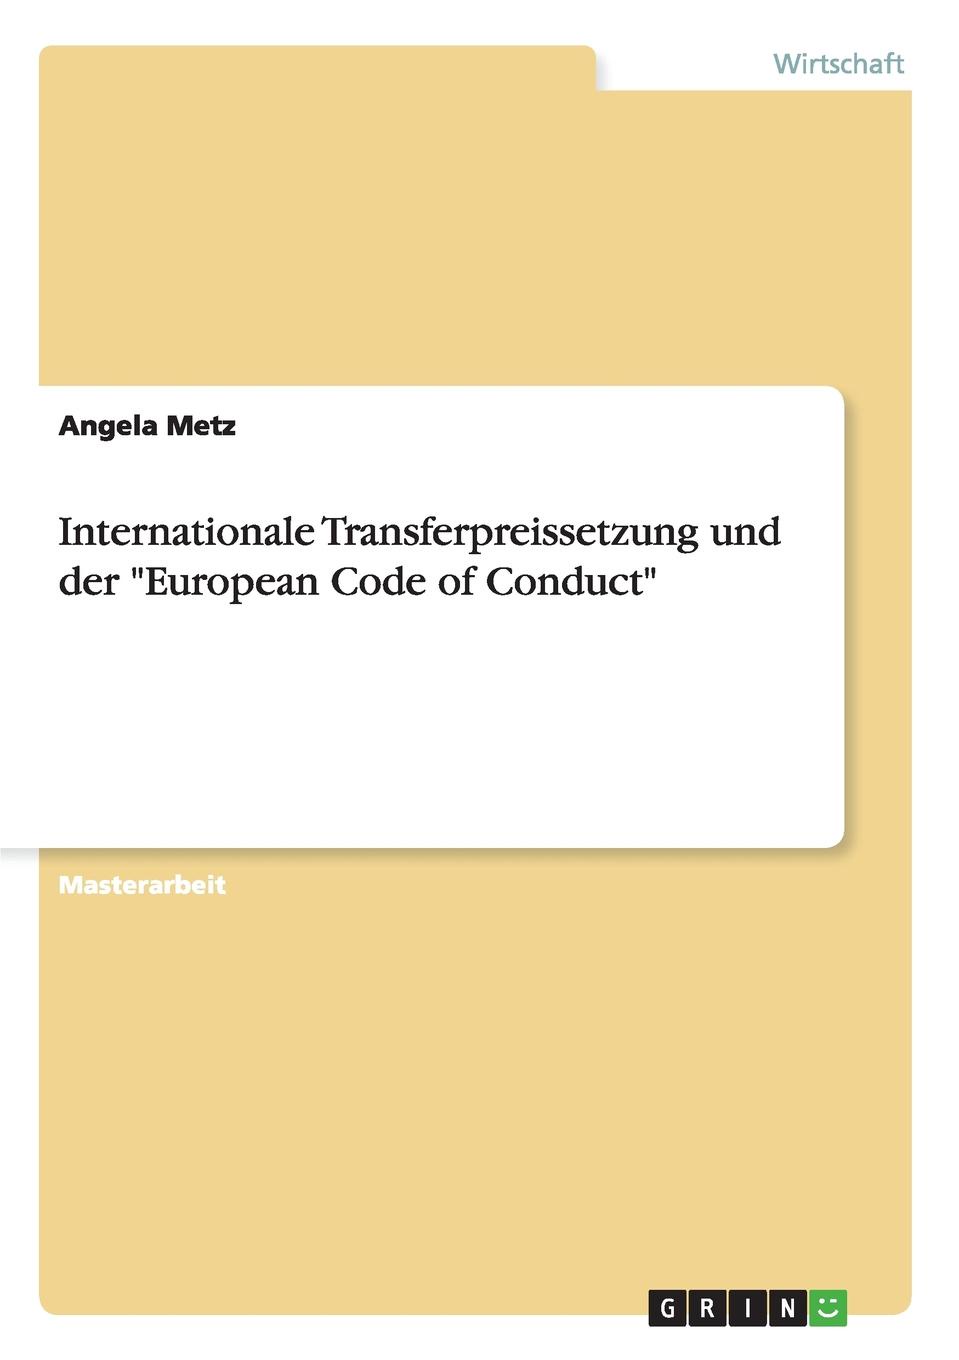 фото Internationale Transferpreissetzung und der "European Code of Conduct"